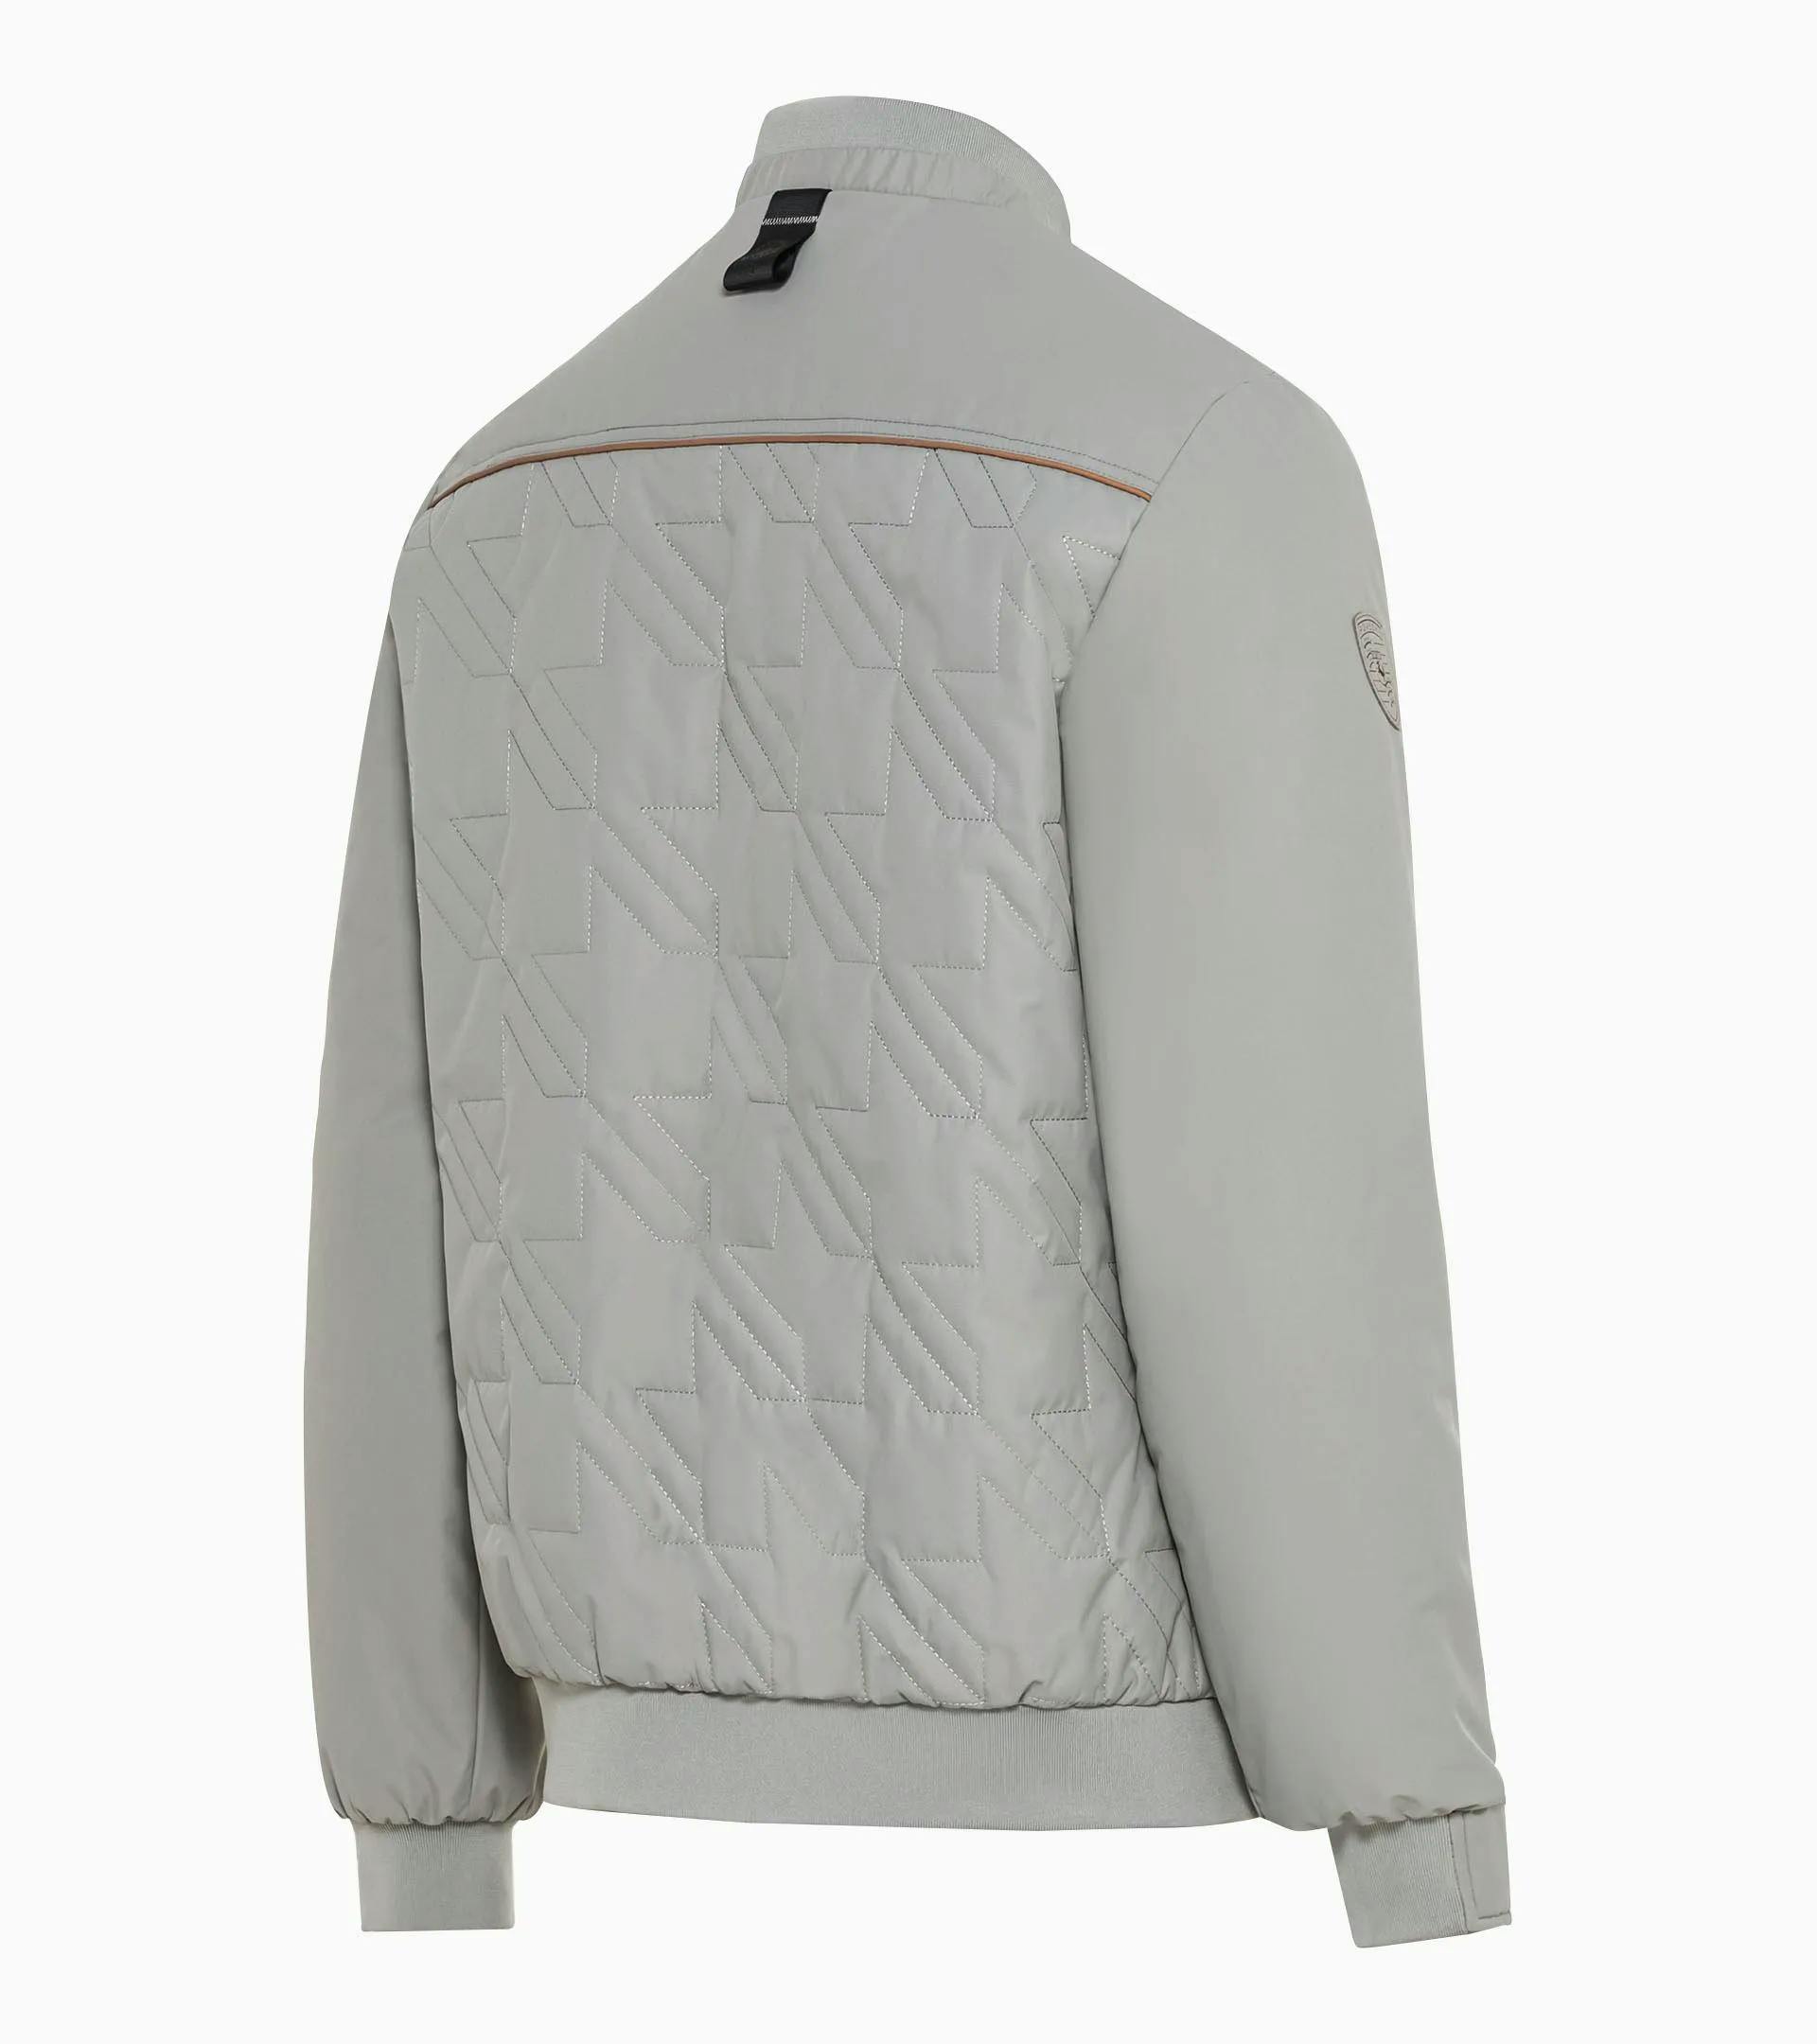 Revesible jacket – Heritage 3